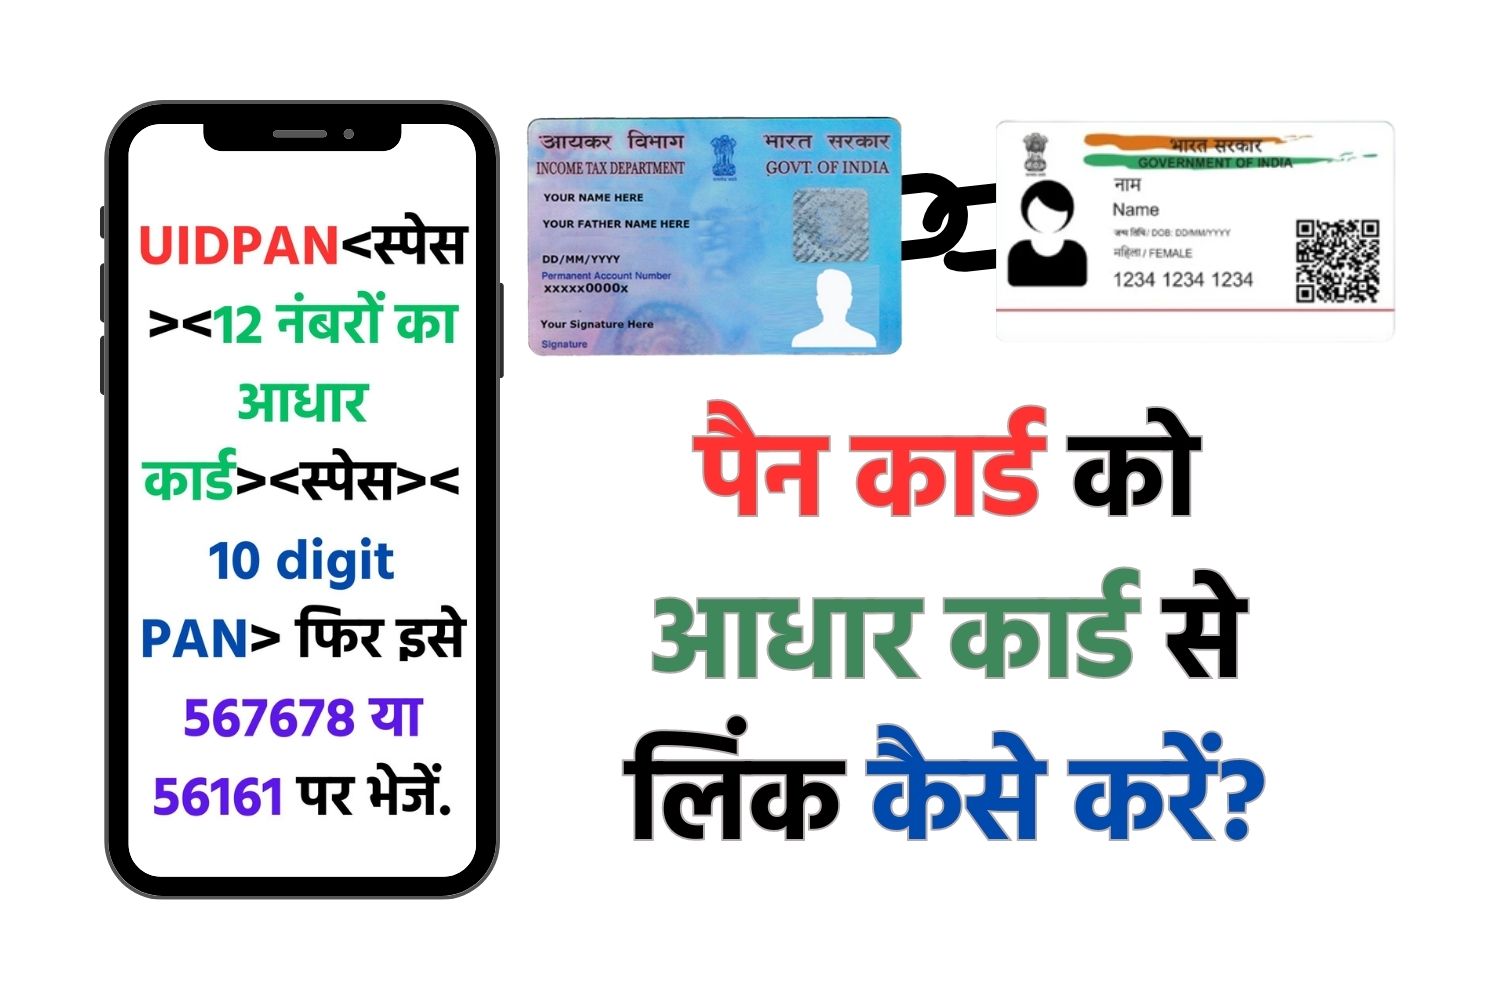 Pan Link To Aadhar - आधार को पैन कार्ड से ऑनलाइन कैसे लिंक करें? जानें पूरी प्रक्रिया